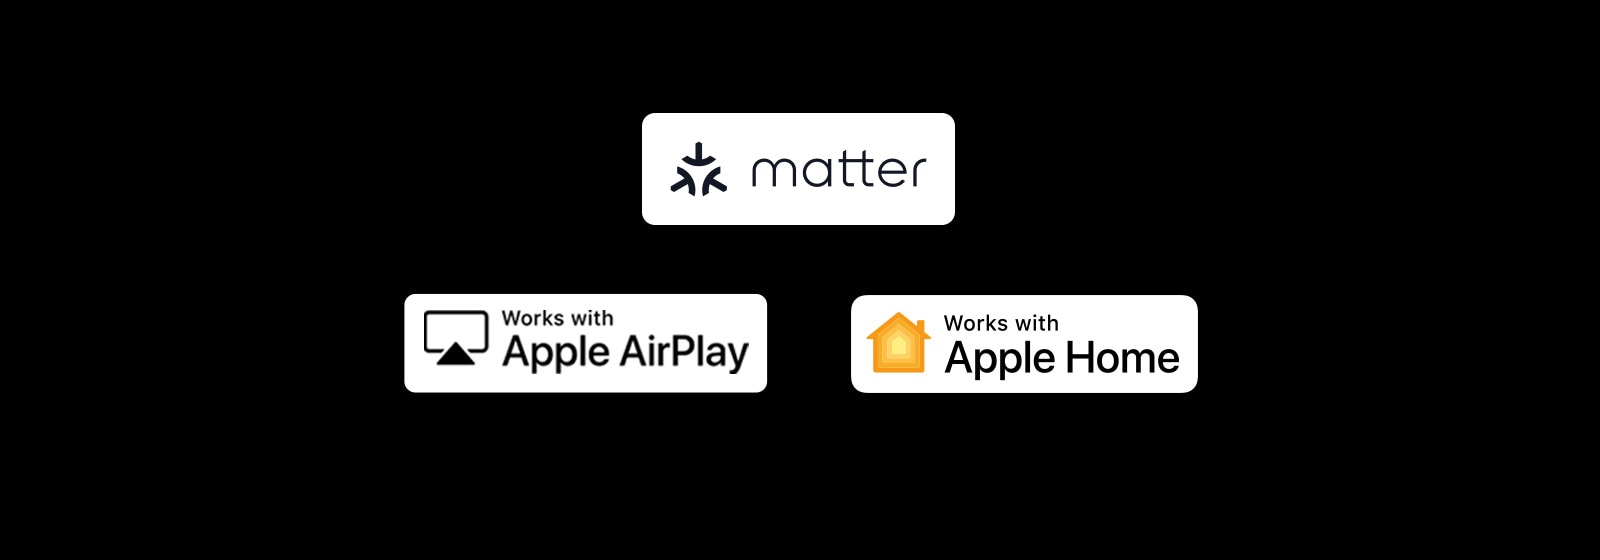 Logotip za Apple AirPlay Logotip deluje z Apple Home Logotip deluje z Matter